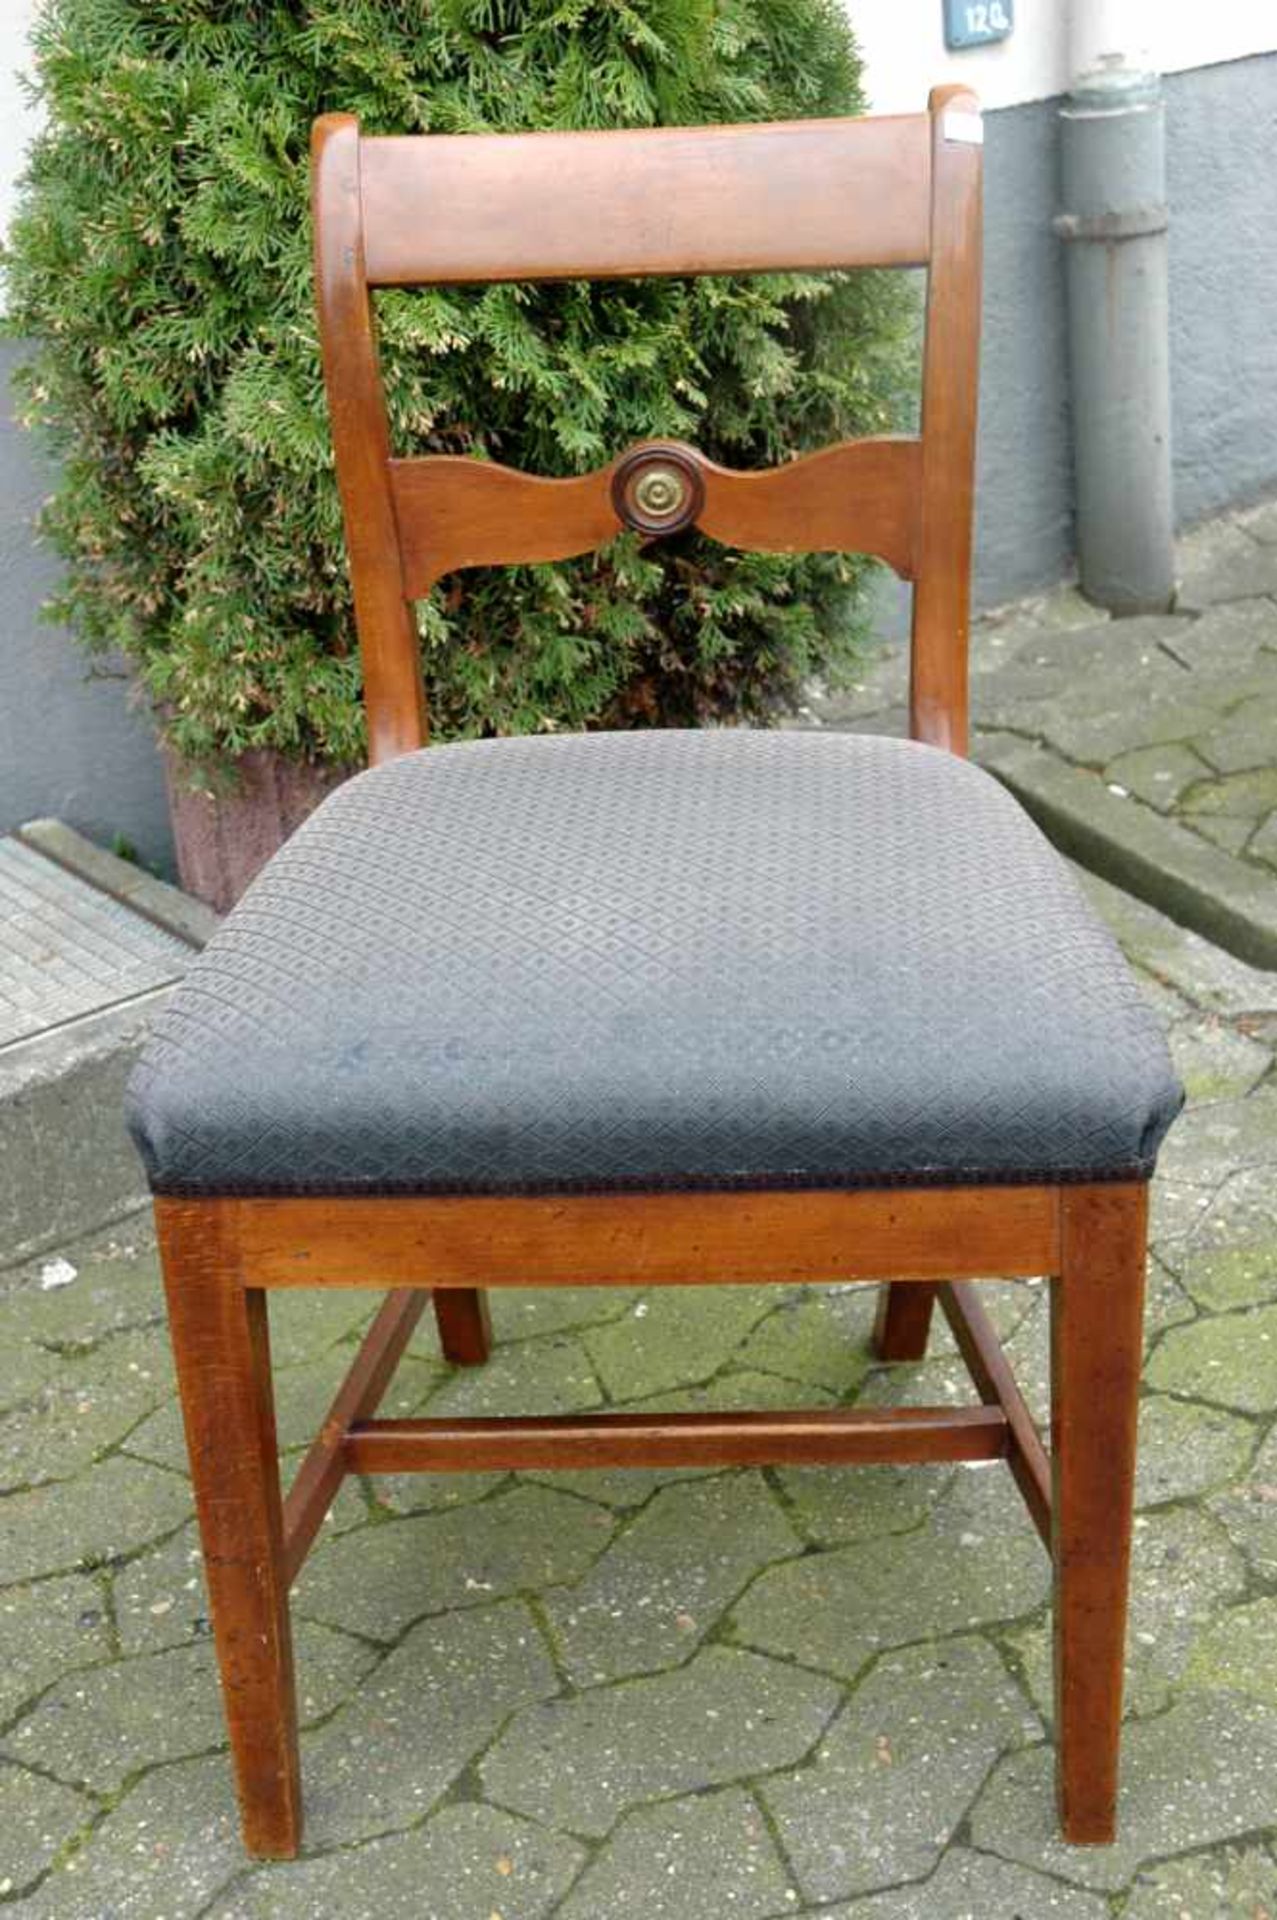 4 Stühle, Sitz grau gepolstert - Bild 2 aus 4